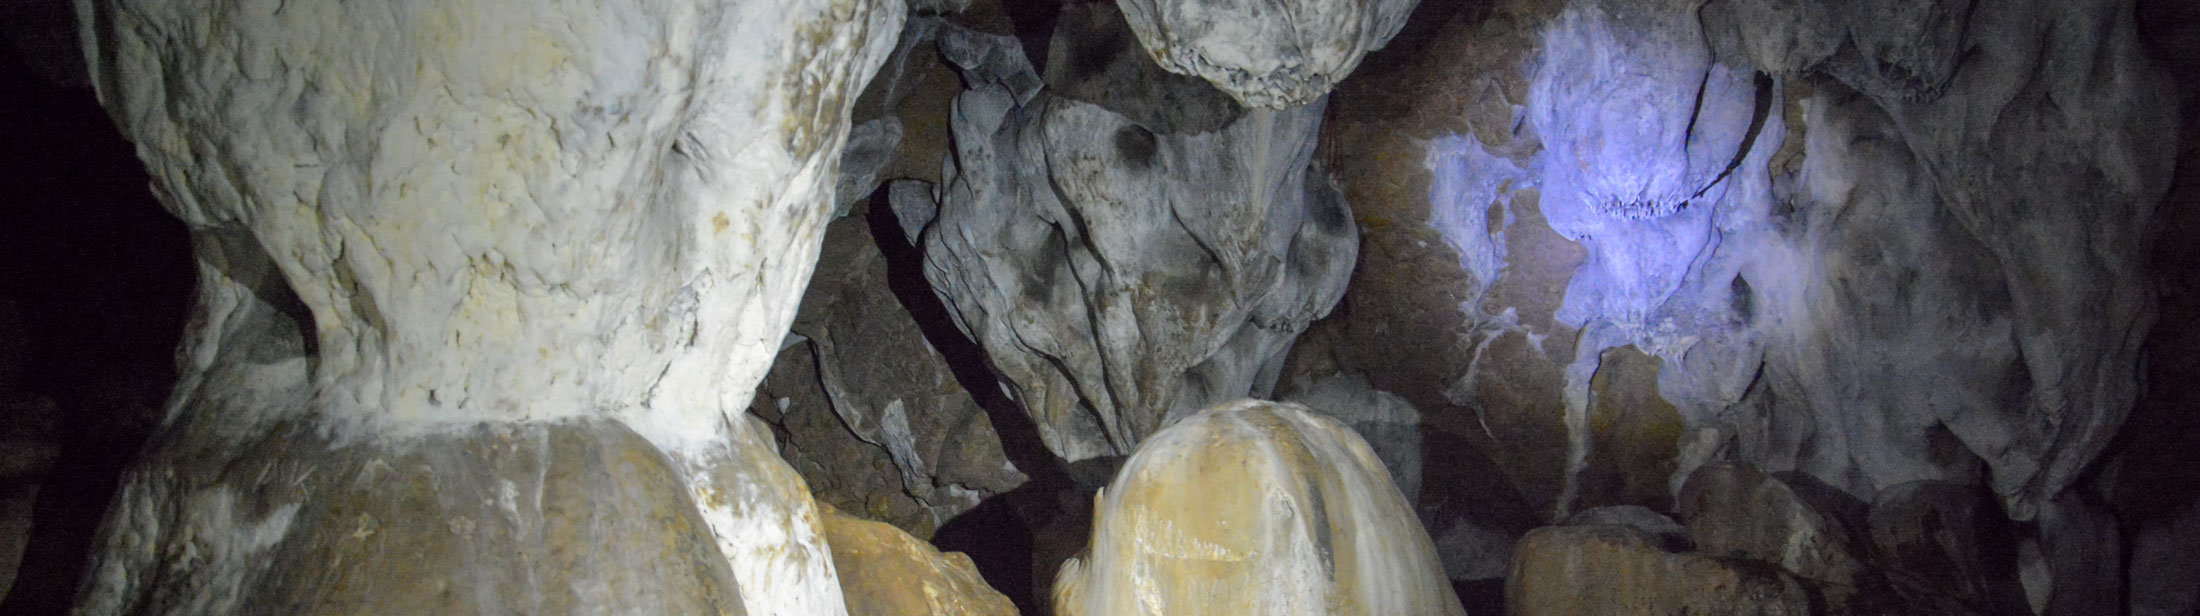 Zaujímavosťou je výzdoba z mäkkého sintra (jaskynného tvarohu), ktorý lieči choroby dýchacích ciest.